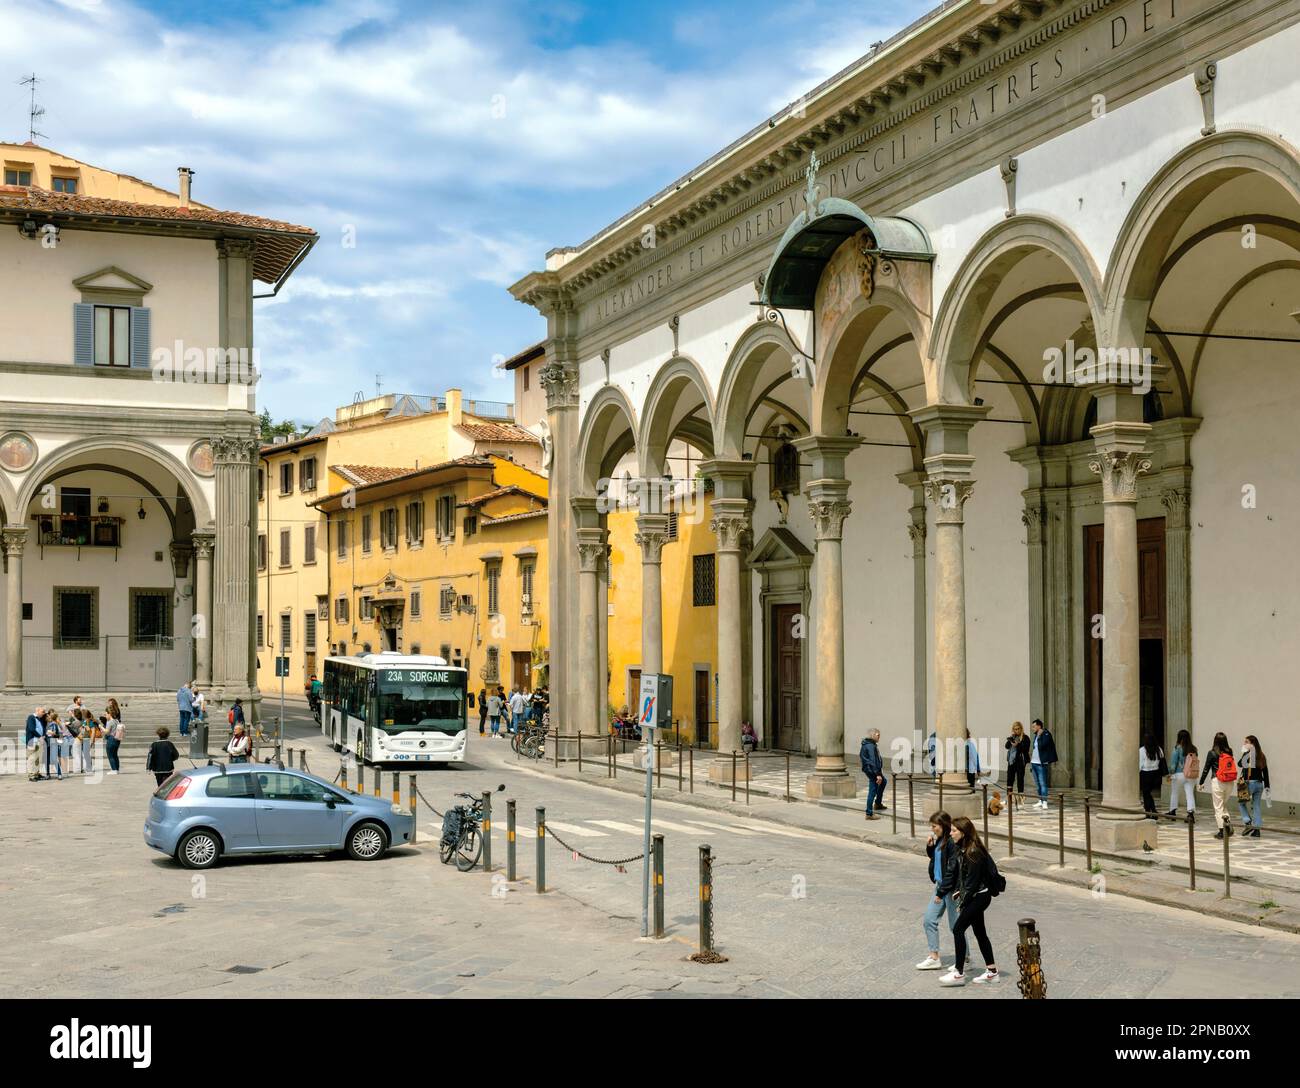 La vie quotidienne sur la Piazza della Santissima Annunziata. Florence, Toscane, Italie. Le centre historique de Florence est classé au patrimoine mondial de l'UNESCO Banque D'Images